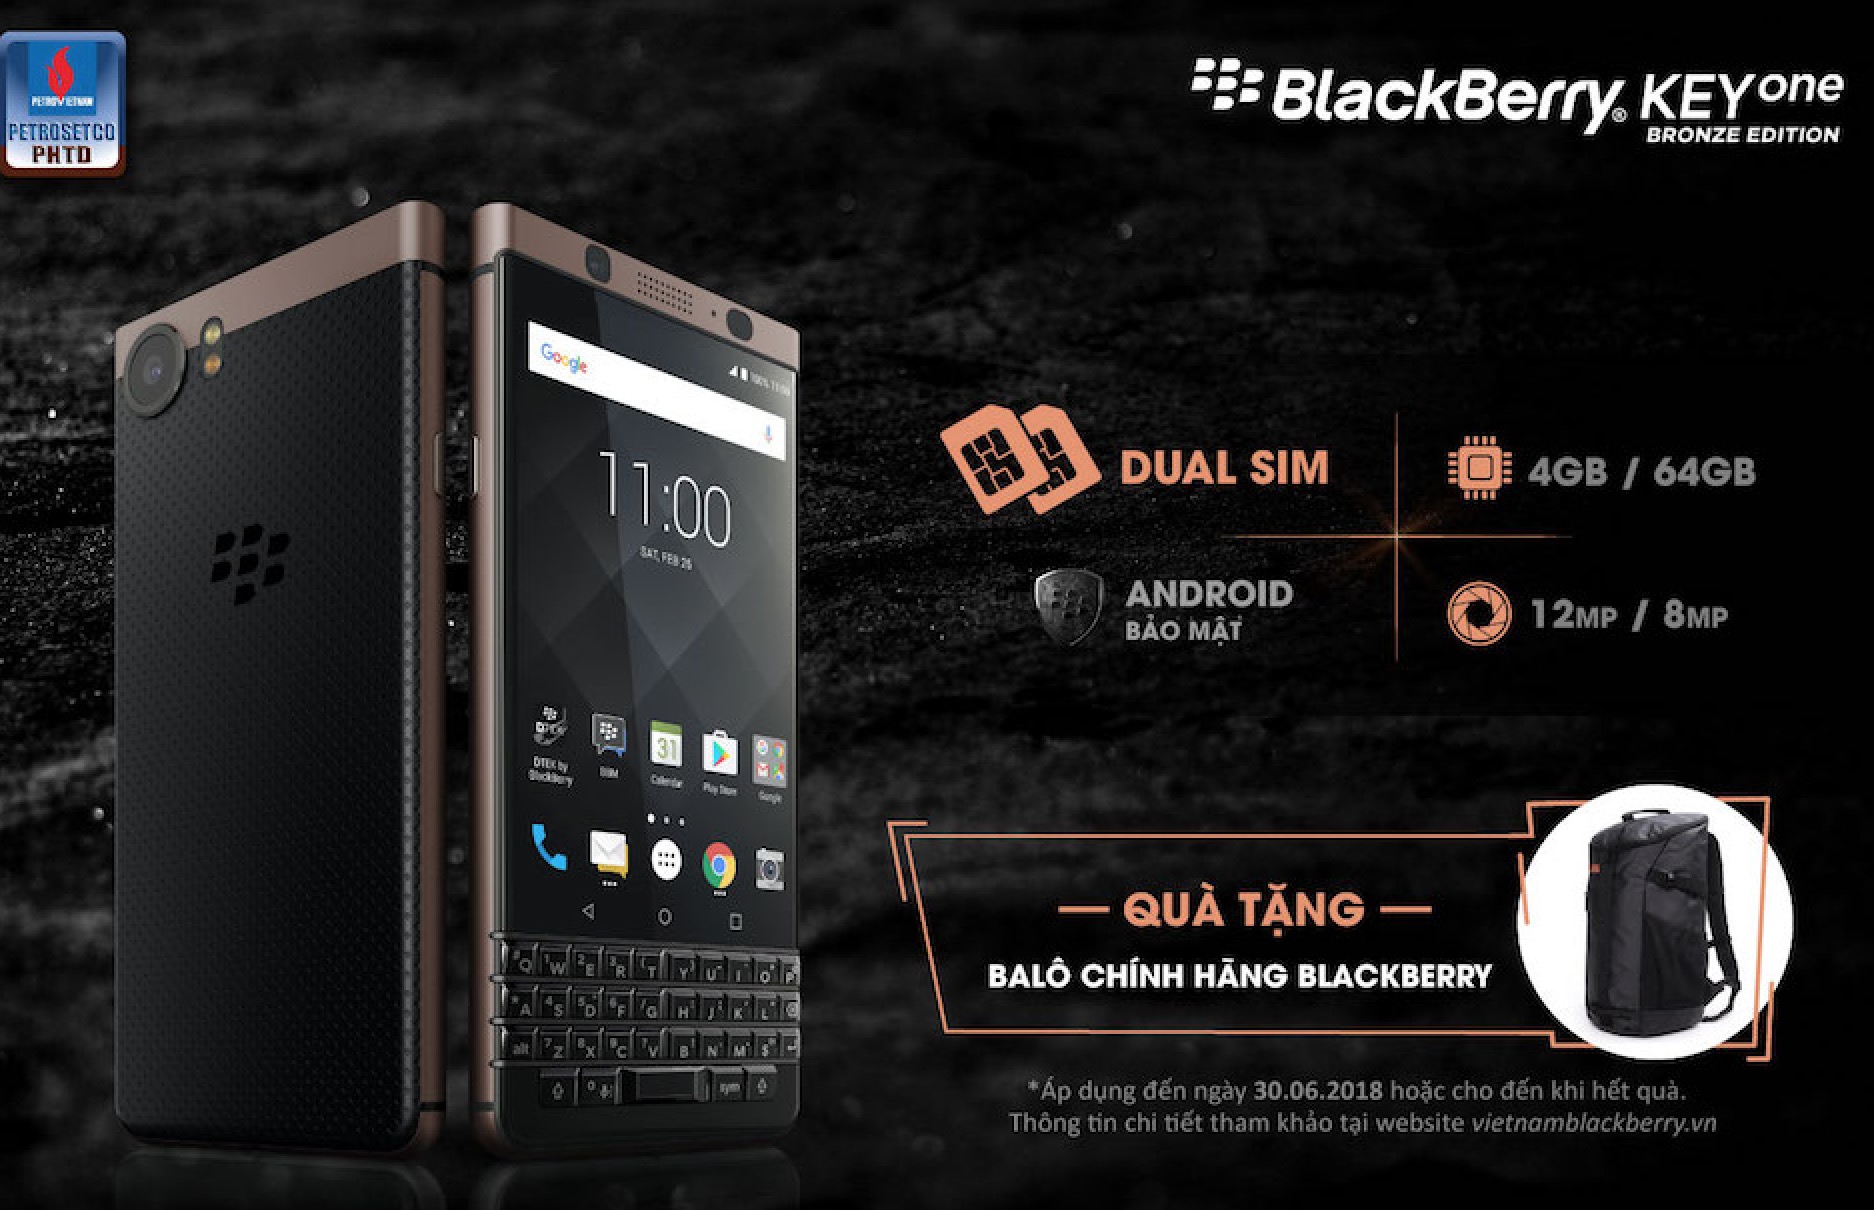 BlackBerry KEYone
Bronze Edition chính thức ra mắt tại Việt Nam, giá
16.490.000 VNĐ